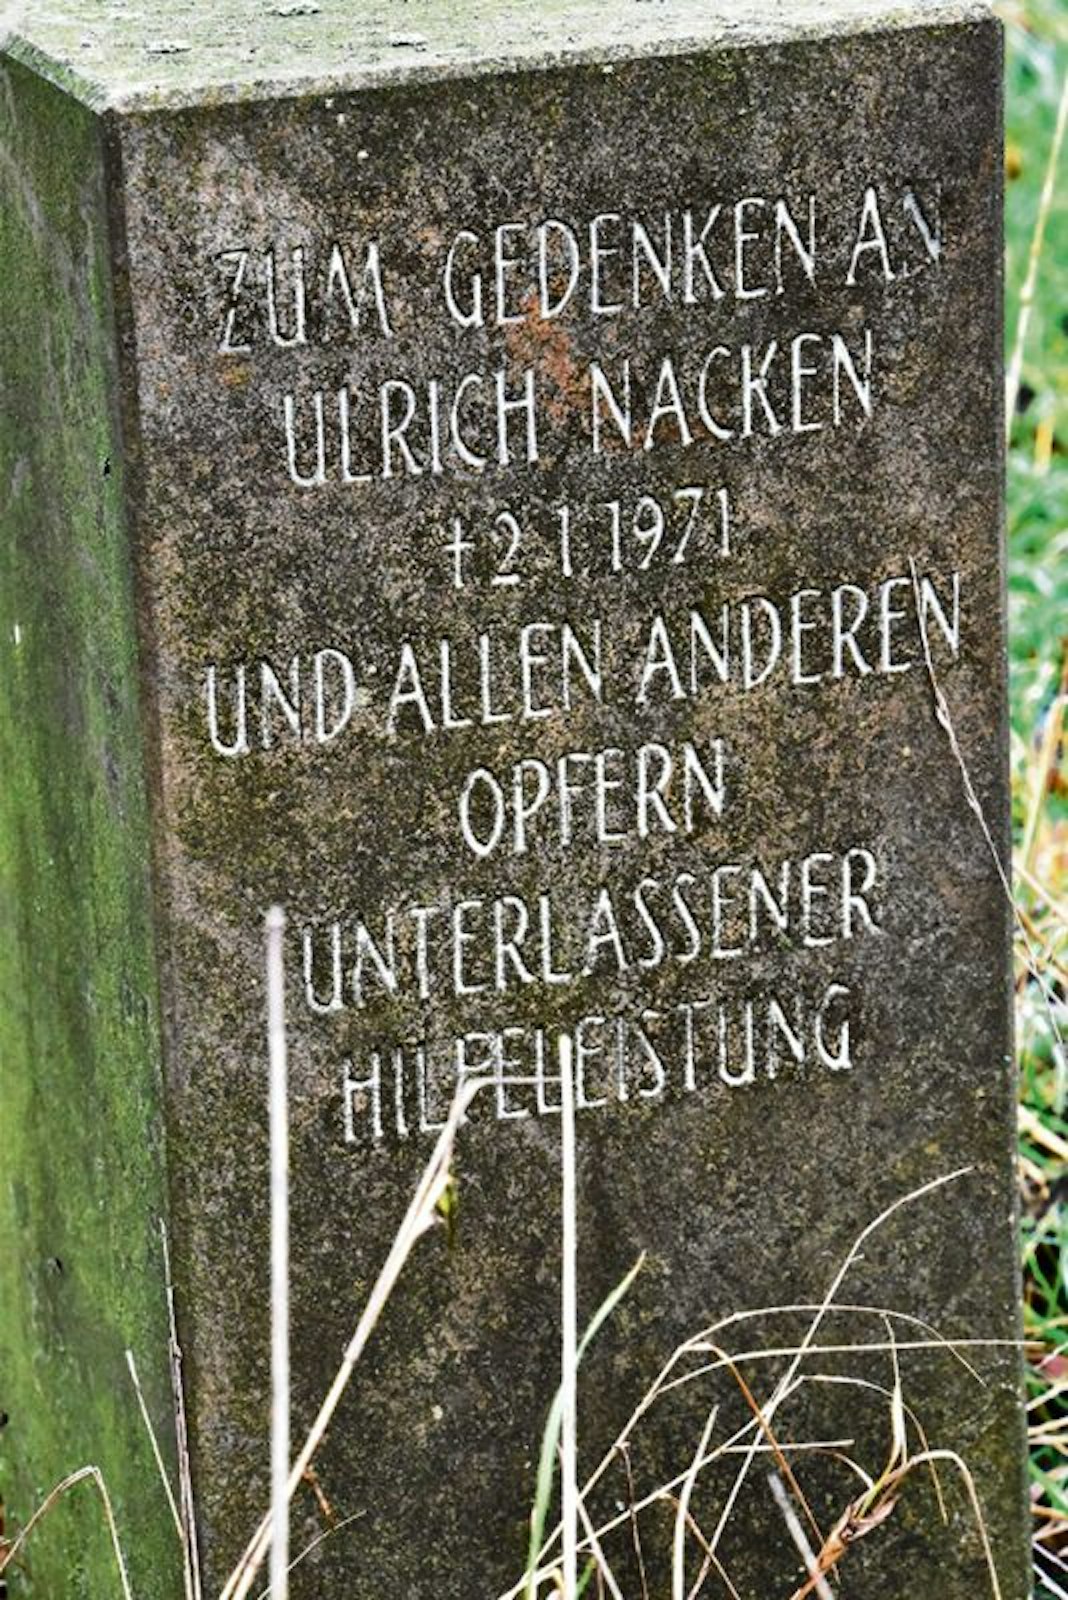 Der Gedenkstein steht an der L 352. Seine Inschrift (kleines Bild) erinnert an Ulrich Nacken, der an dieser Stelle 1971 erfror.